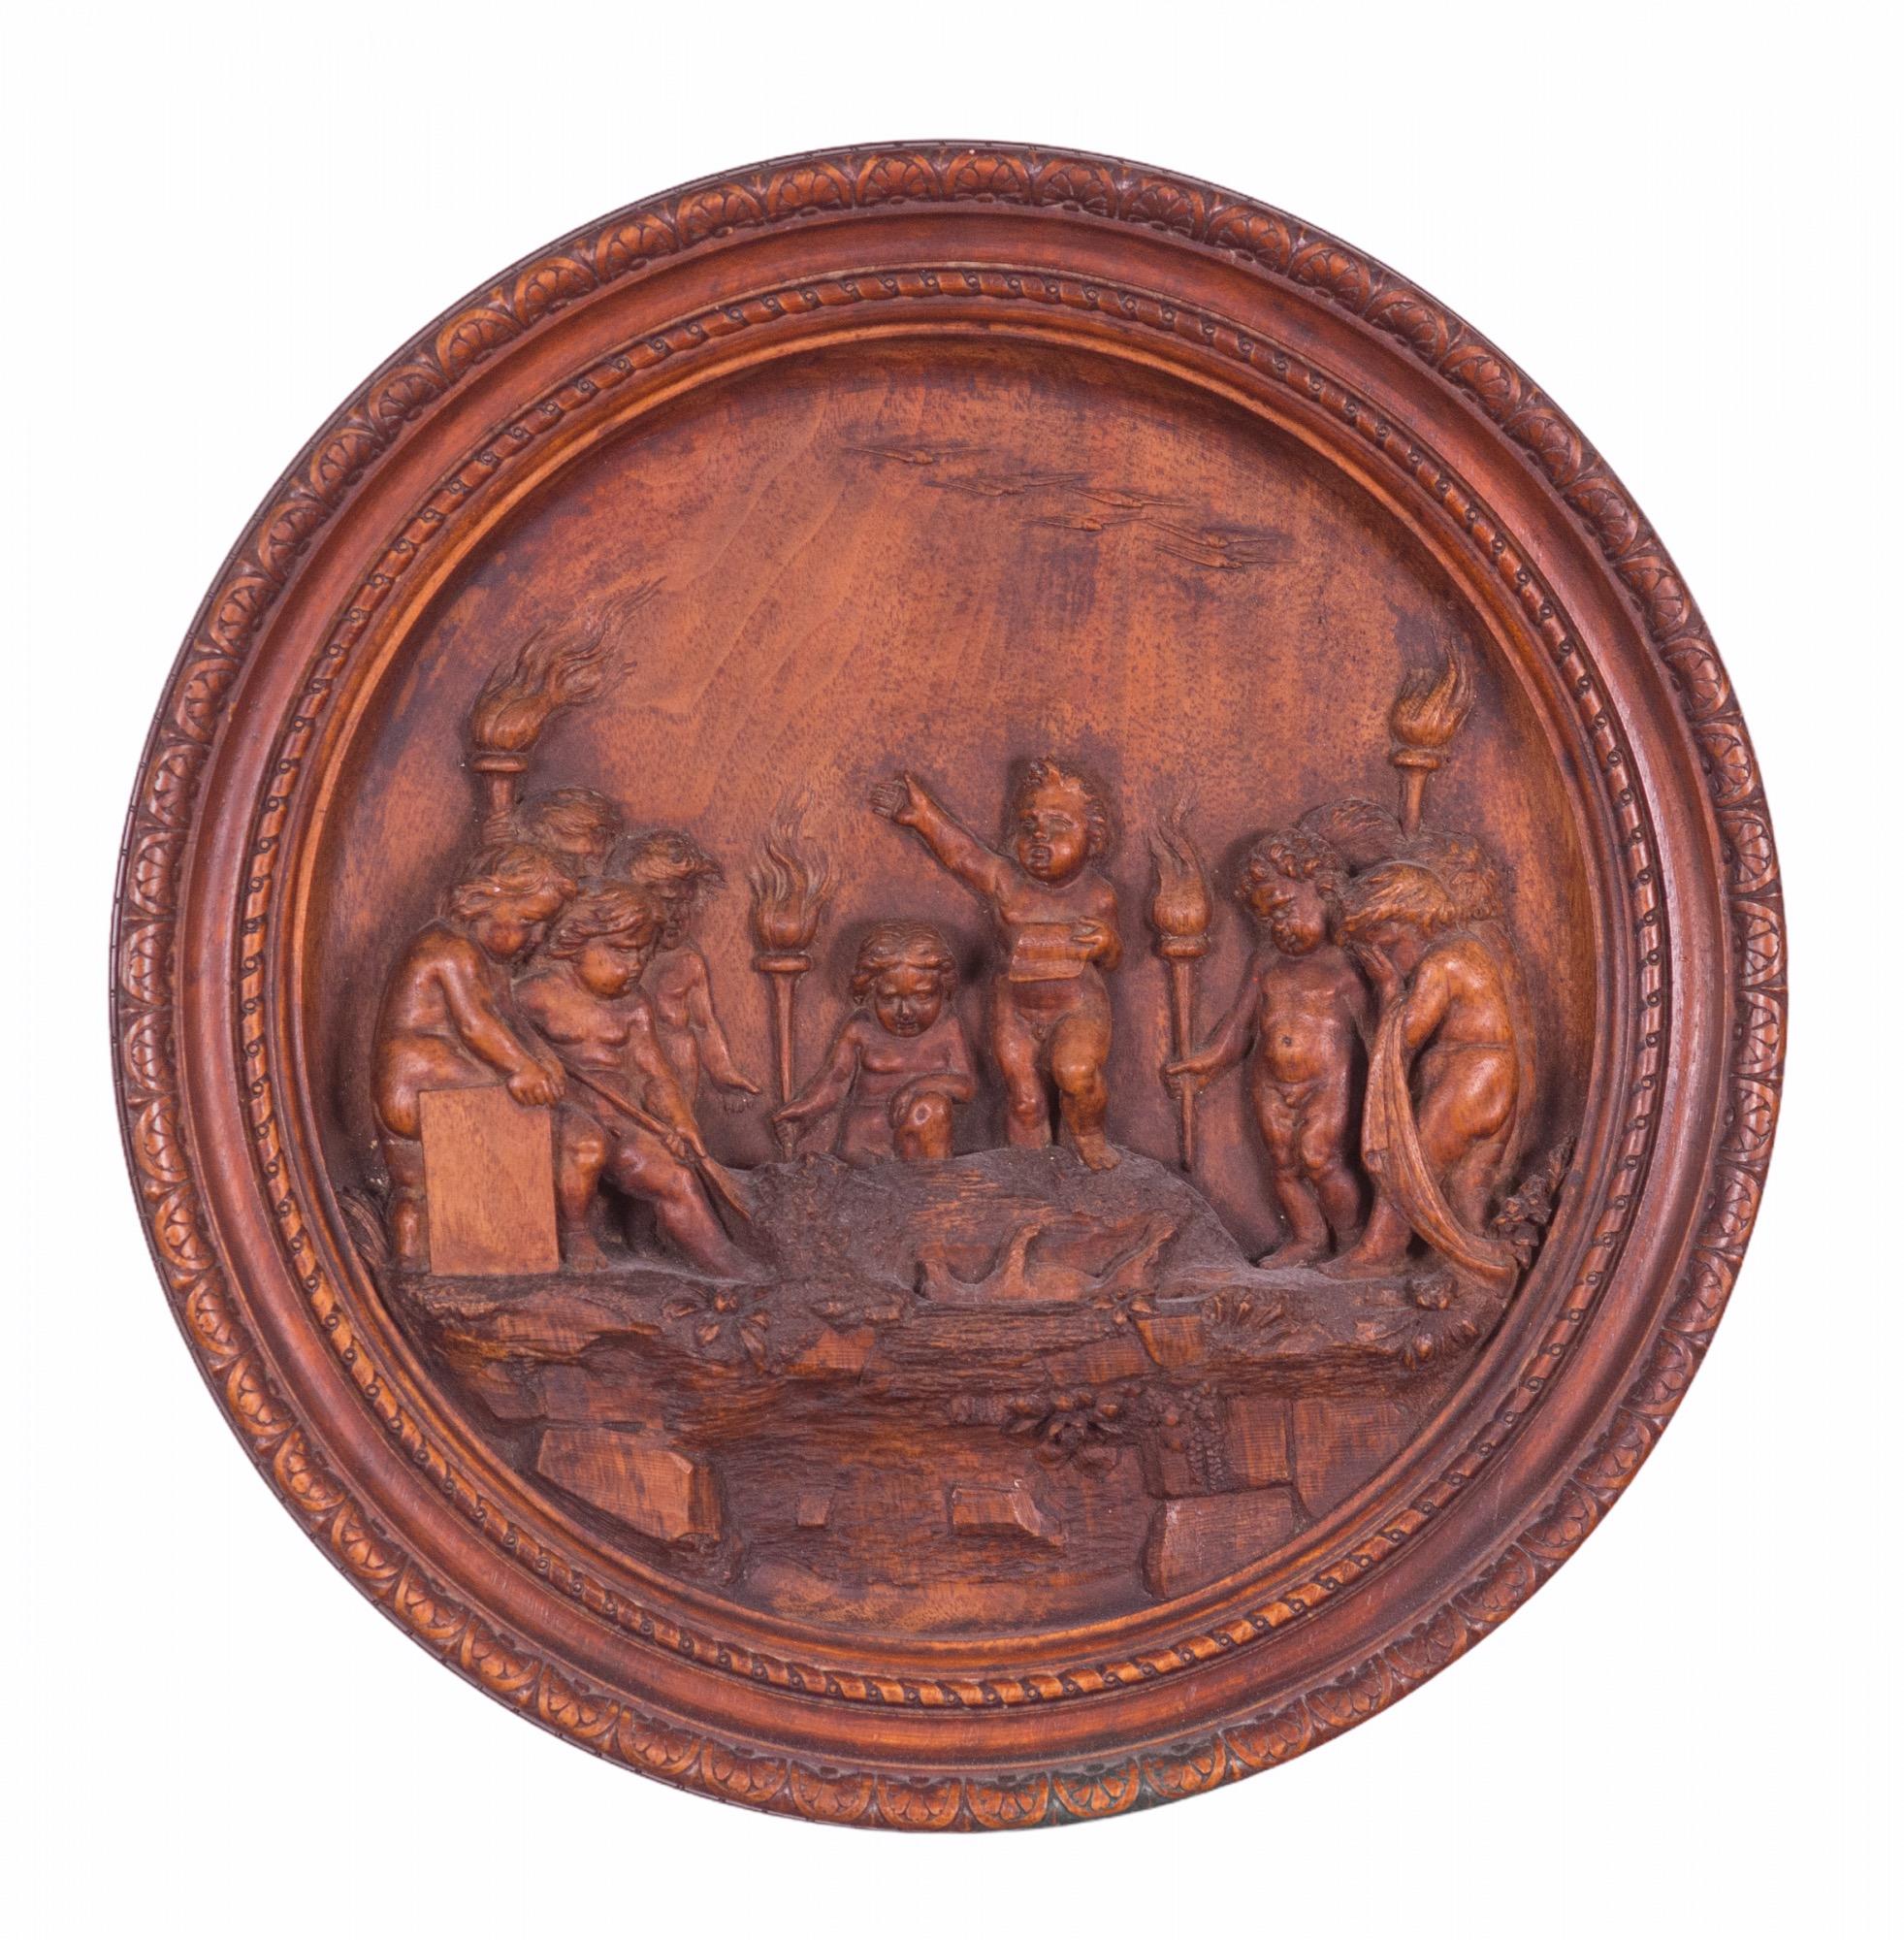 Panneau français en bois sculpté du XVIIIe siècle représentant une scène de chérubins enterrant leur animal de compagnie, exprimant le fait que Dieu se soucie de l'ensemble de la création et que, les animaux de compagnie faisant partie de cette